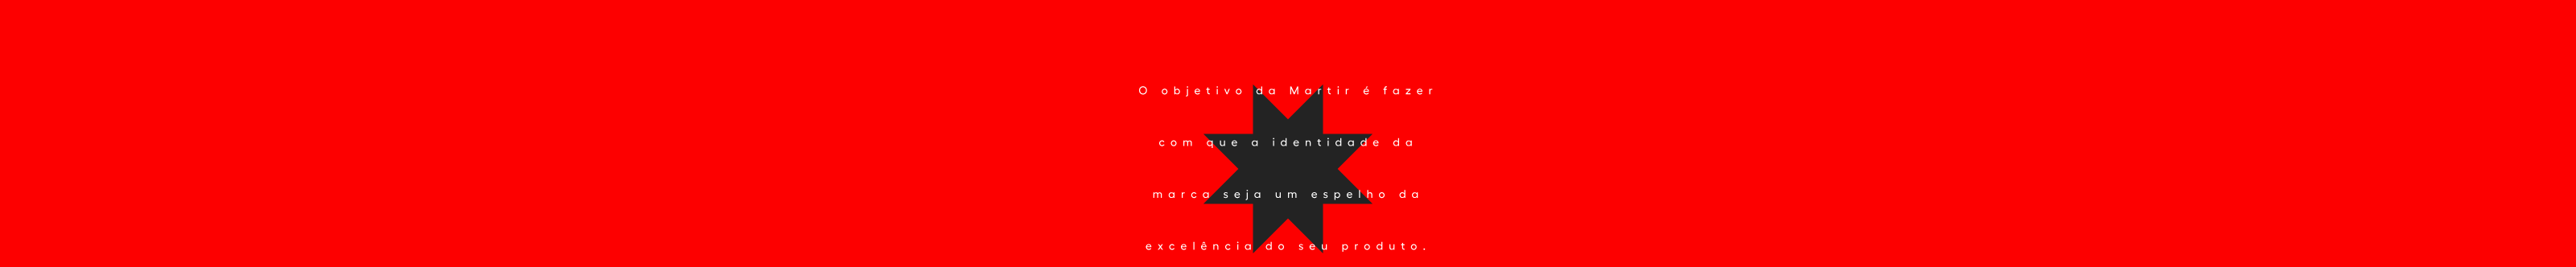 Júlio Martir's profile banner